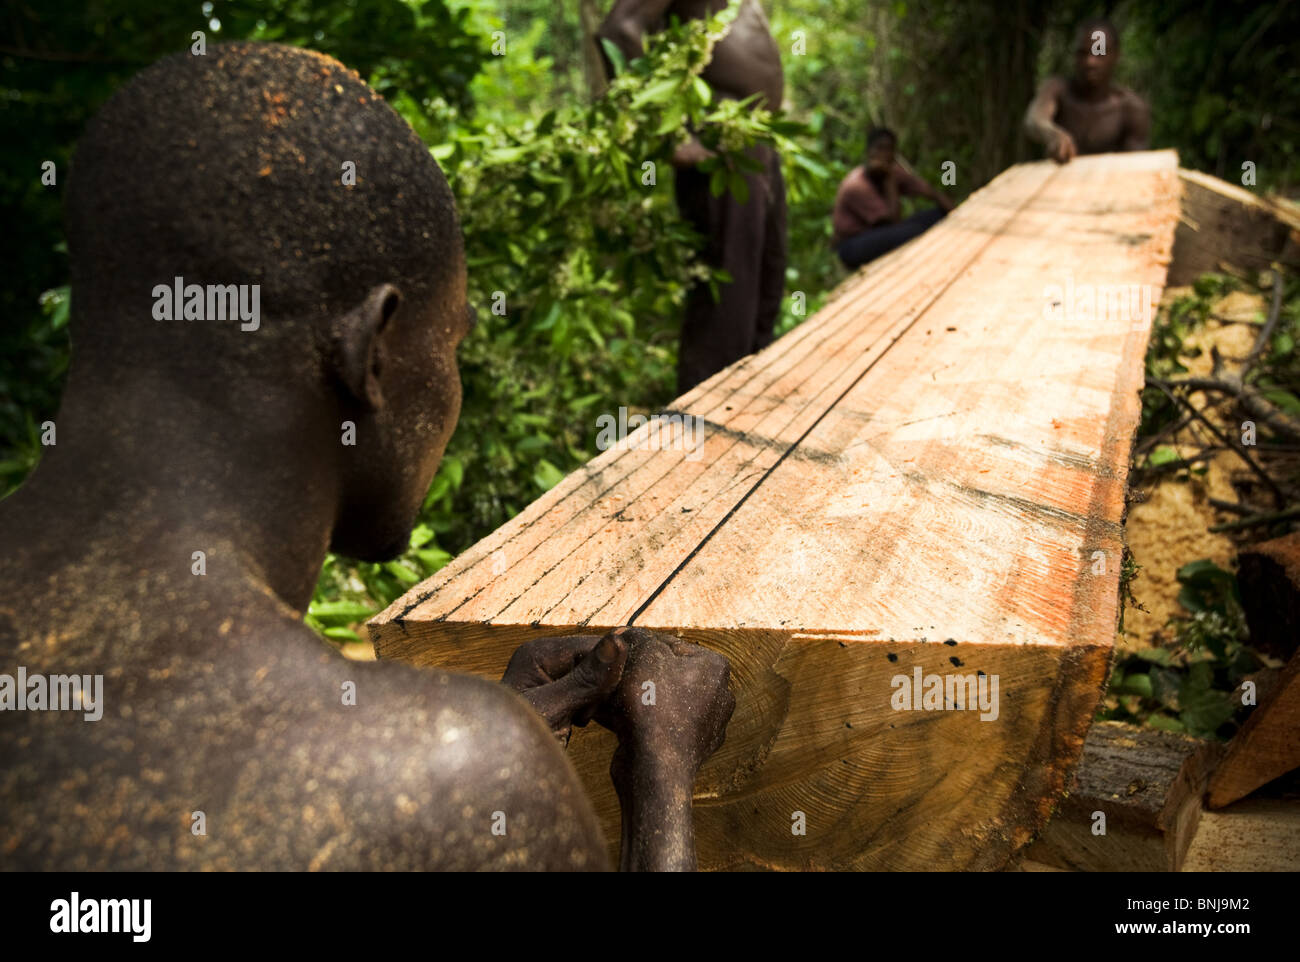 Les hommes utilisent une petite scie à découper les planches du coffre d'un grand arbre ceiba après la coupe vers le bas sur les terres agricoles, au Ghana Banque D'Images